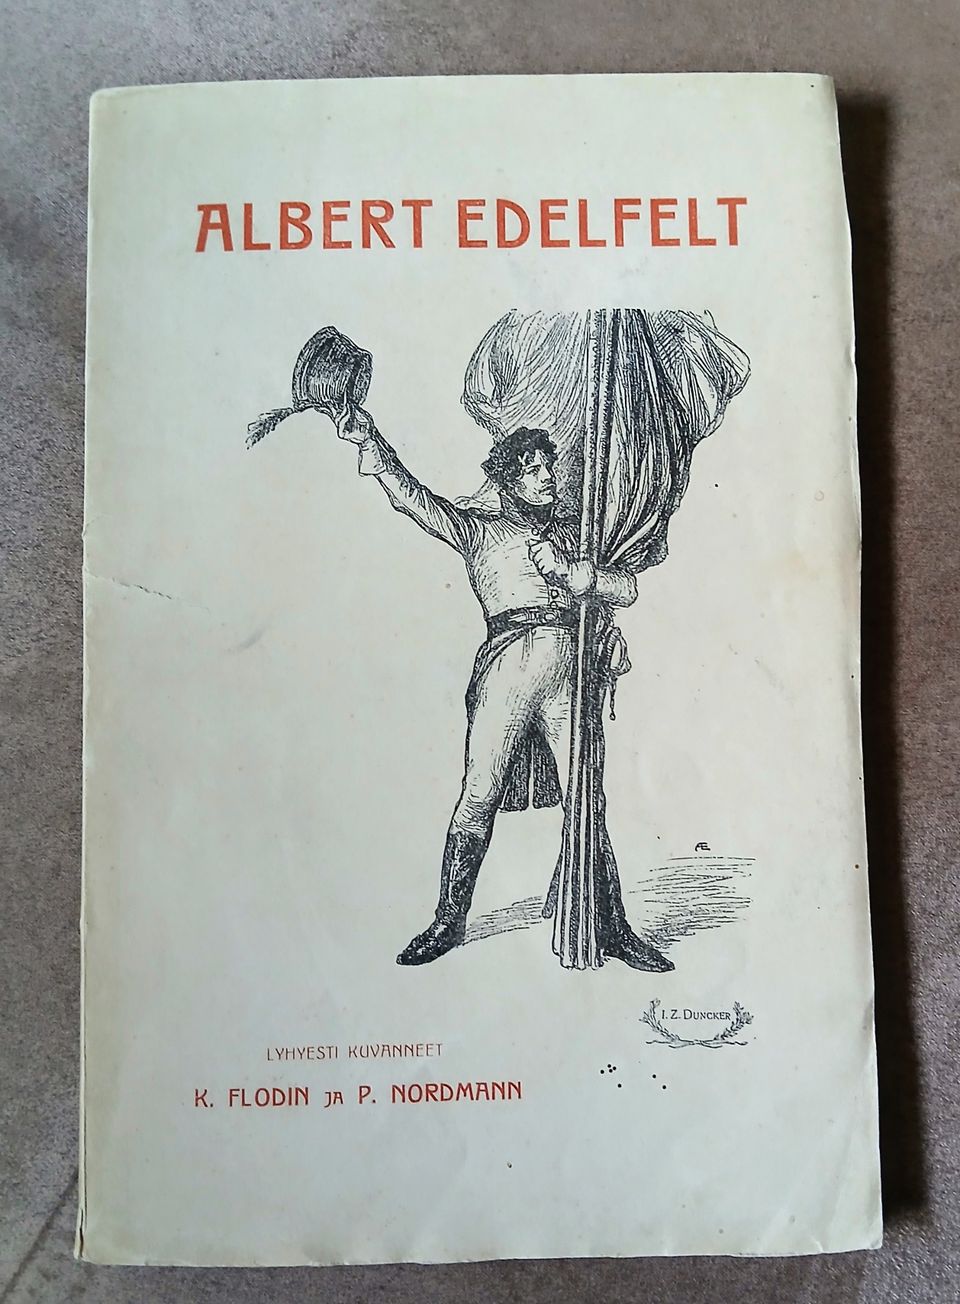 Albert Edelfelt "Muistojulkaisu 1905"